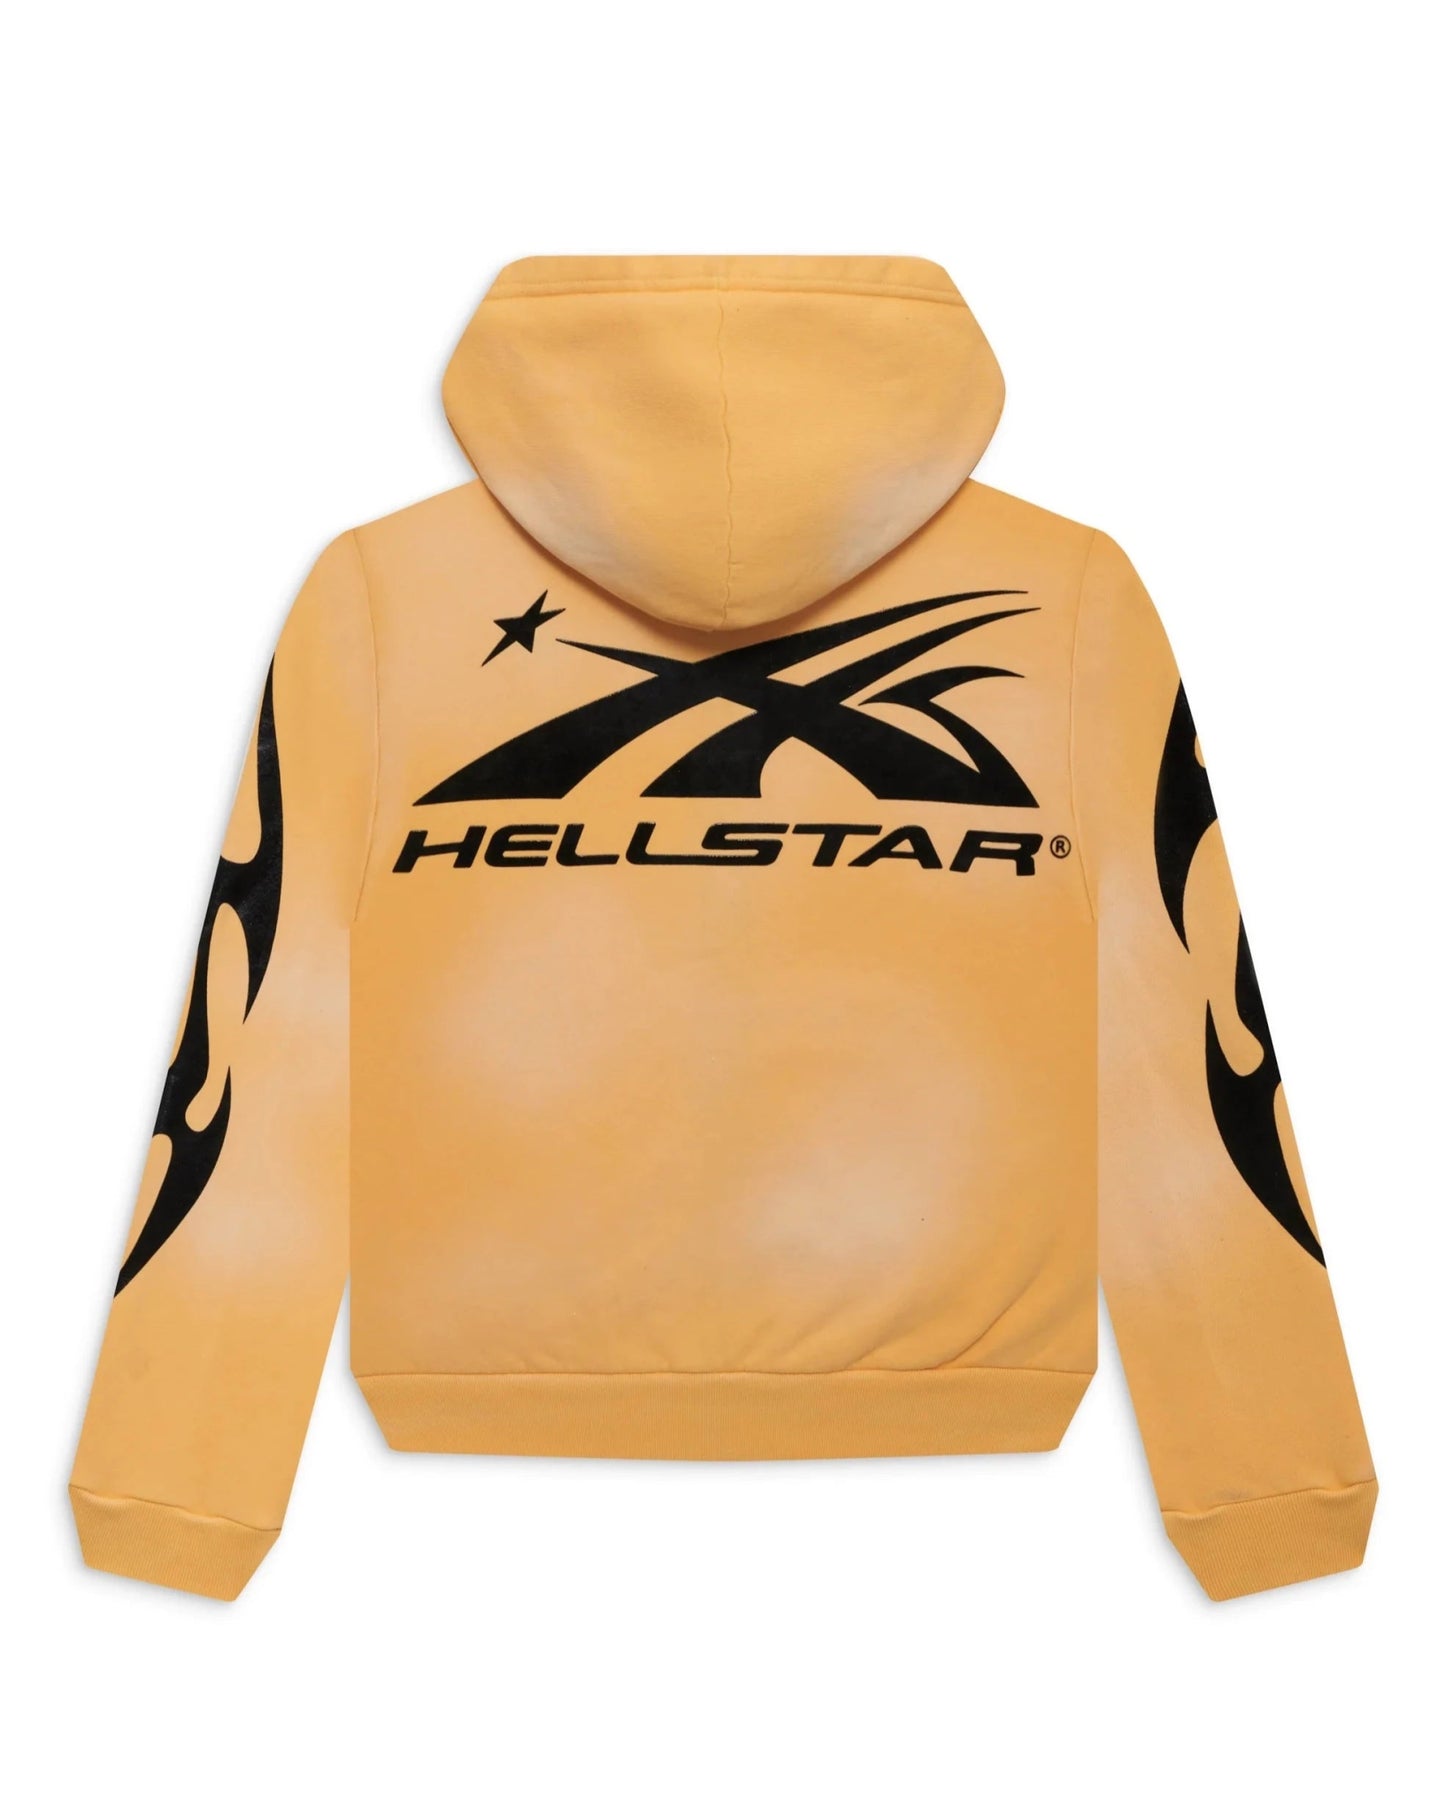 Hellstar Sports Zip-Up Hoodie (Yellow) - Supra Sneakers